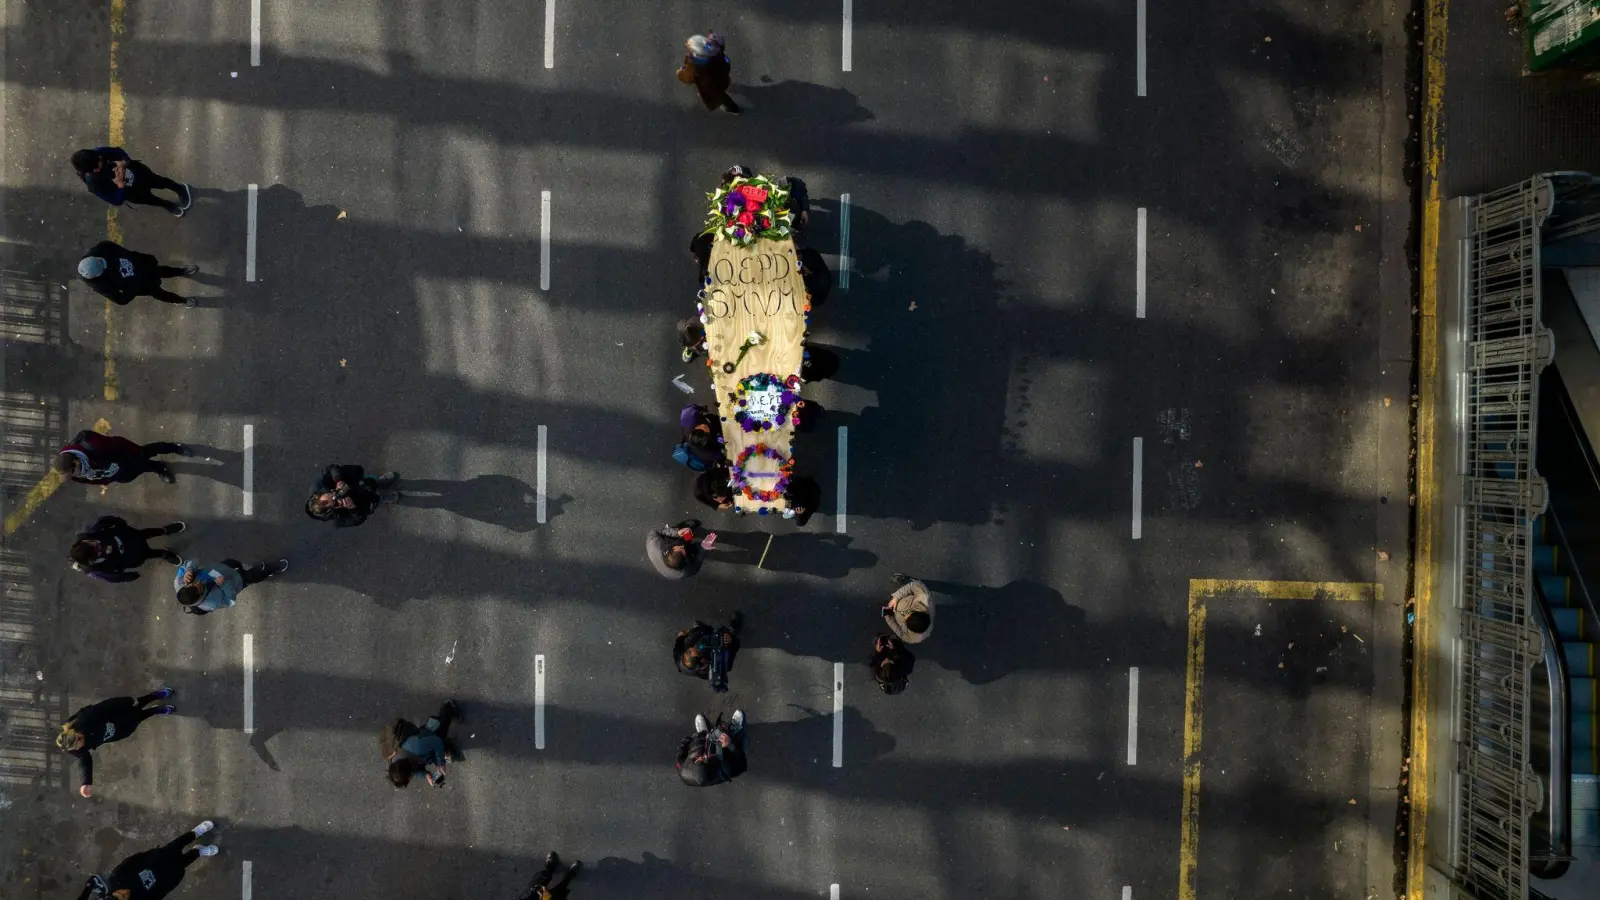 Protest gegen die Regierung: Demonstranten in Buenos Aires mit einem Sarg, der den Tod eines Mindestlohns darstellen soll. Die Inflationsrate in Argentinien ist auf über 70 Prozent gestiegen. (Foto: Rodrigo Abd/AP/dpa)